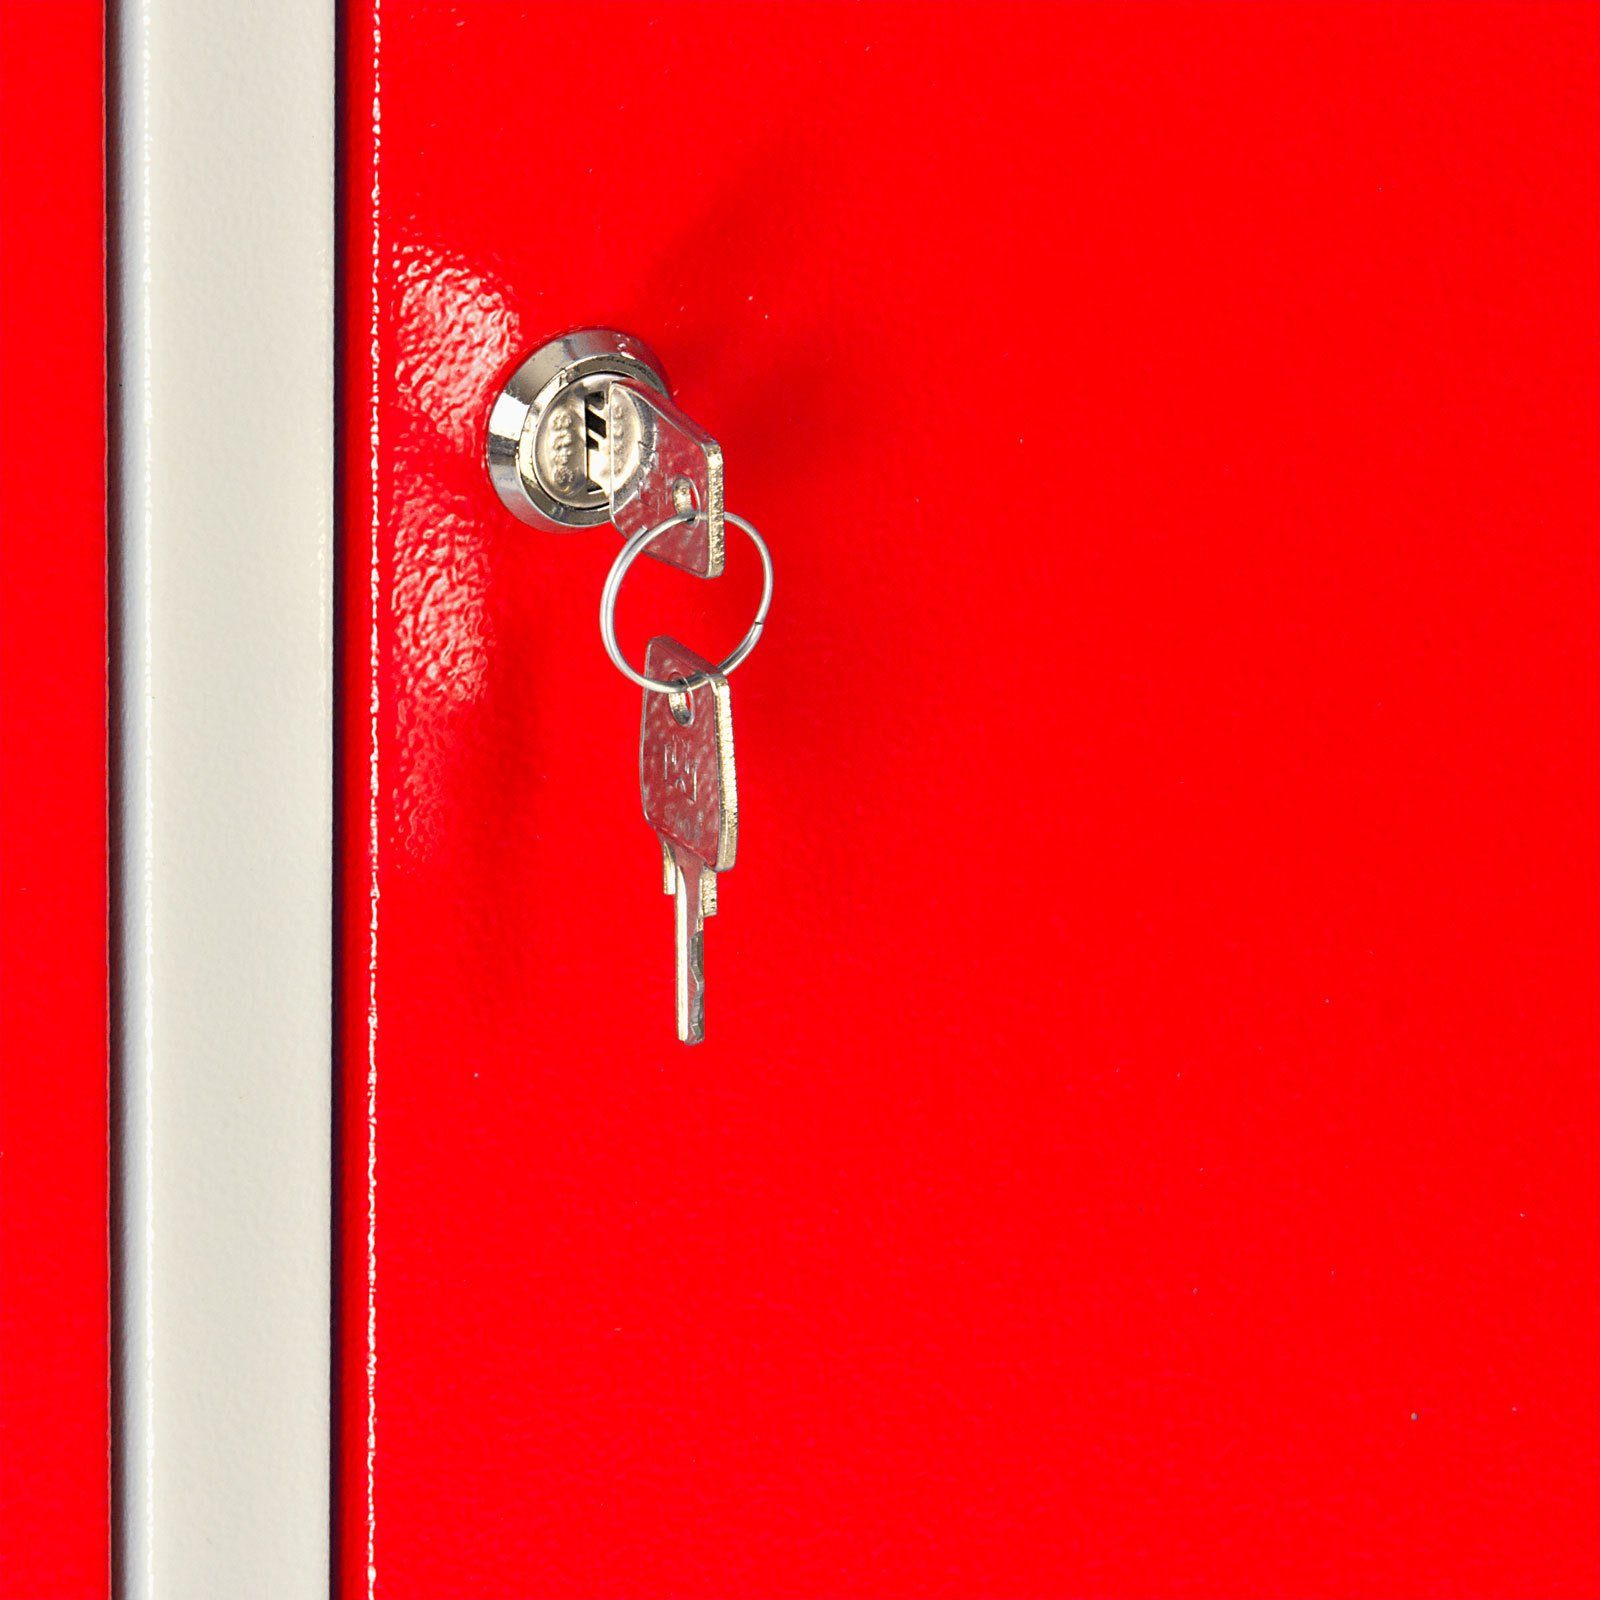 PROREGAL® Garderobenschrank mit Grau/Gelb Ermine Garderobenschrank Türen, 178x89x50cm, Feuerrot HxBxT 3